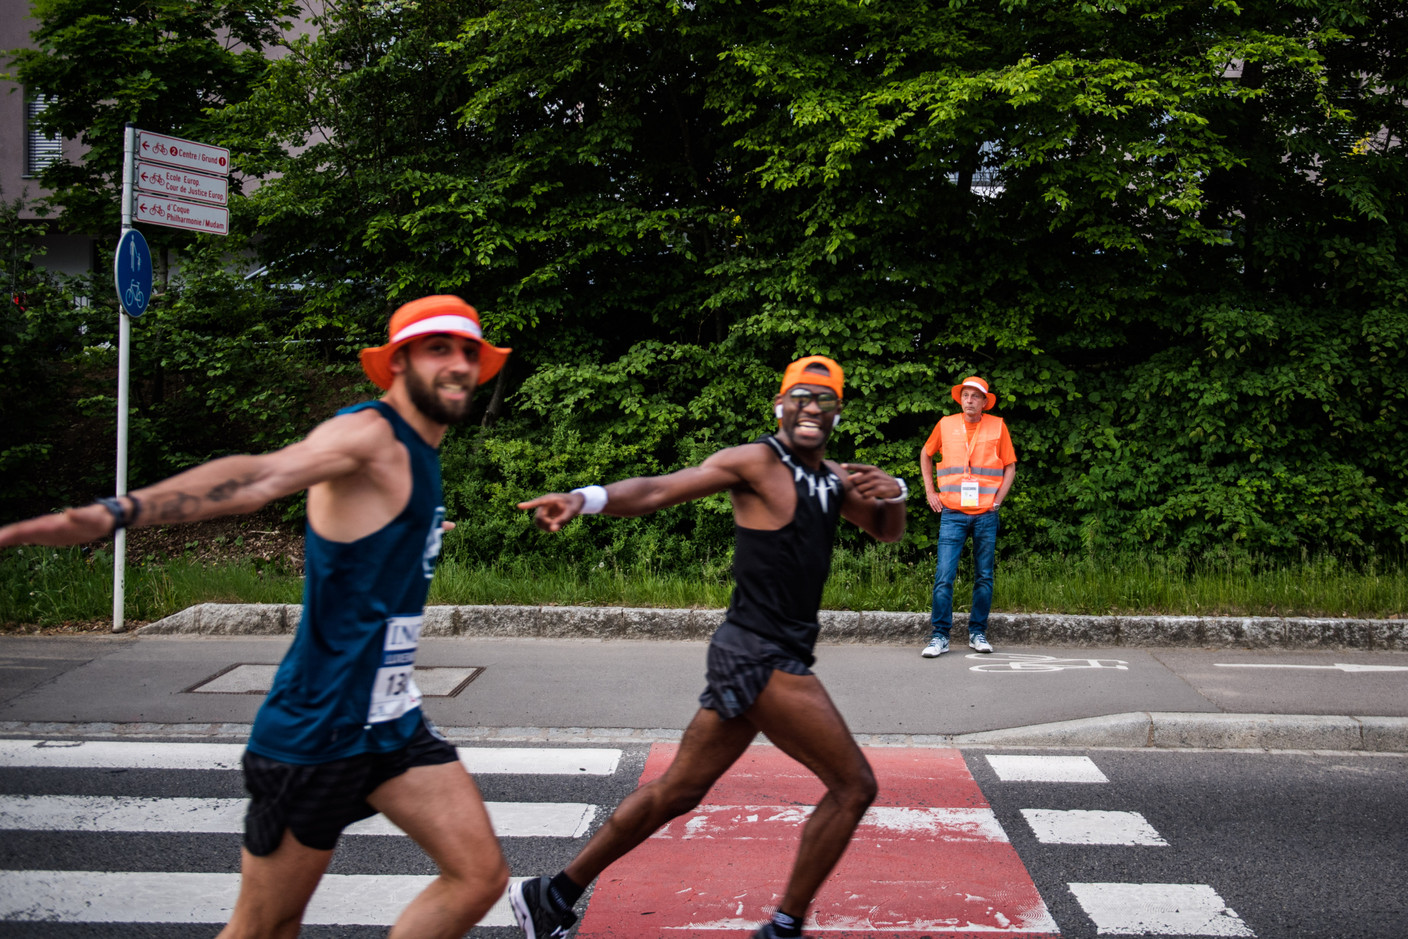 L’ING Night Marathon 2018 avait rassemblé 16.000 coureurs dans les rues de Luxembourg-ville. (Photo: Nader Ghavami/Archives)